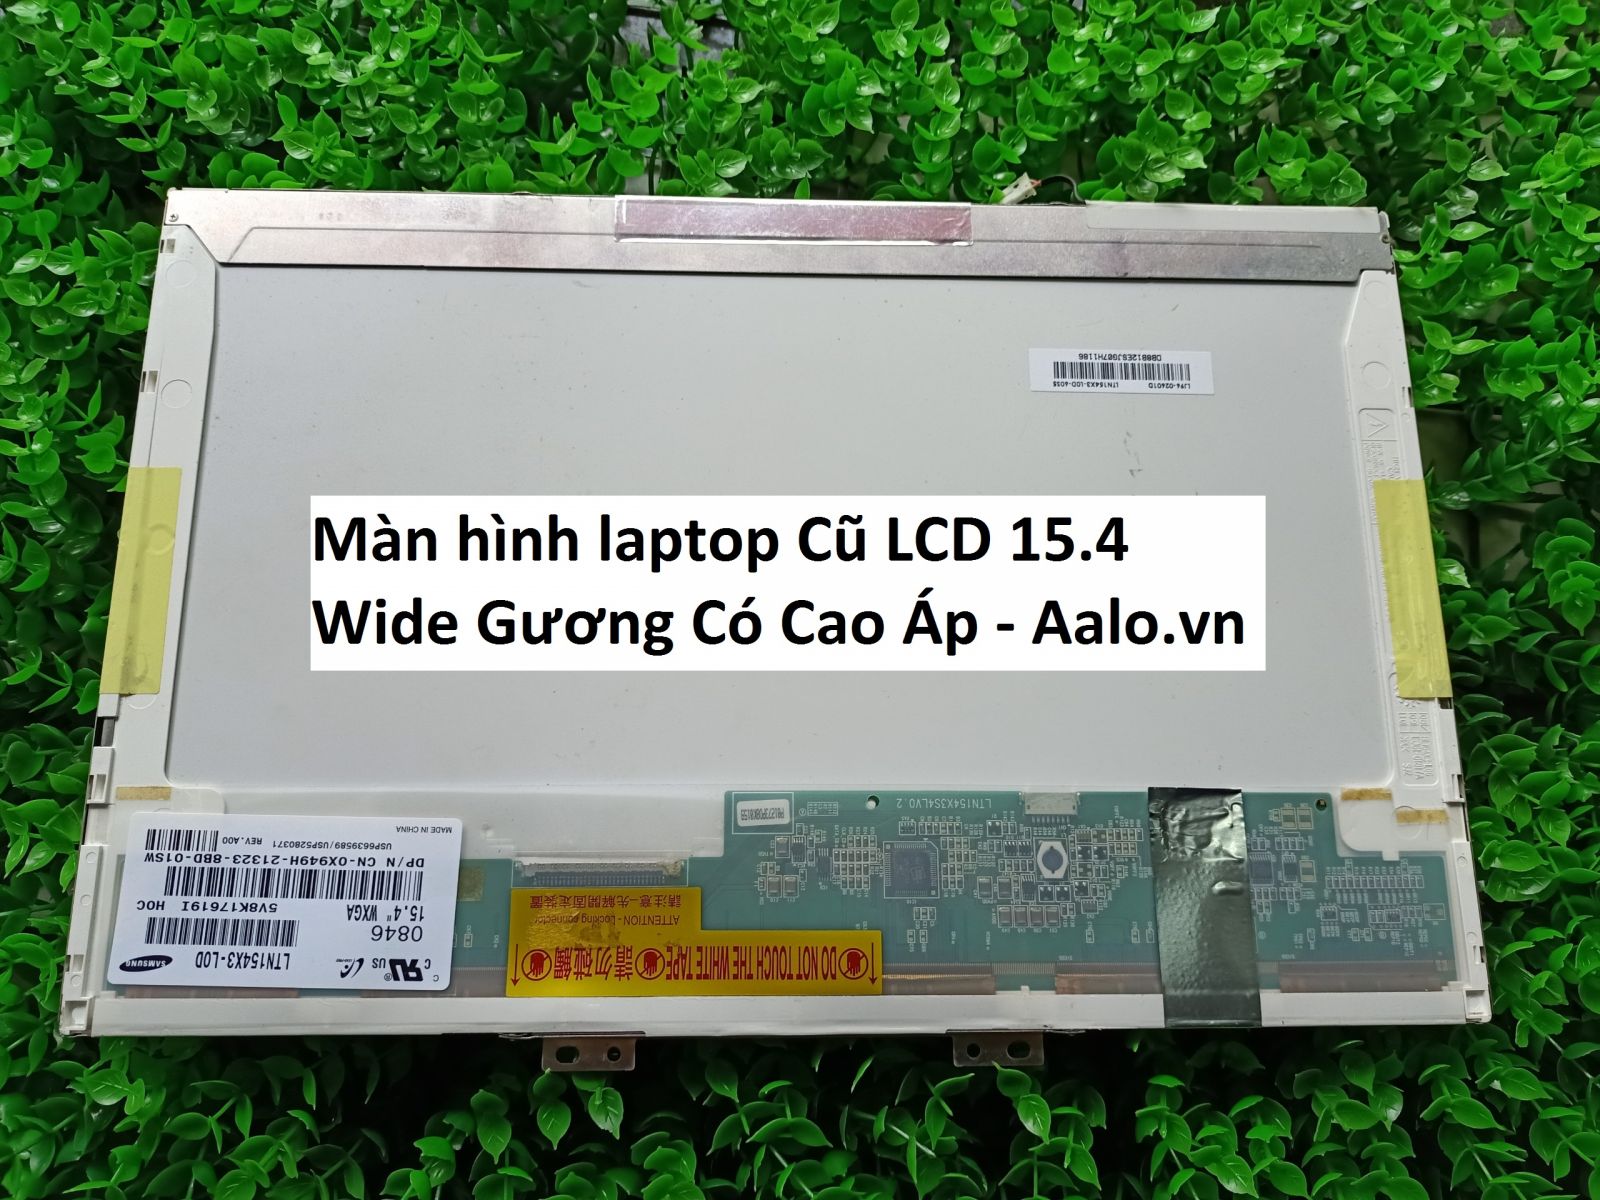 Màn hình laptop Cũ LCD 15.4 Wide Gương Có Cao Áp - Aalo.vn